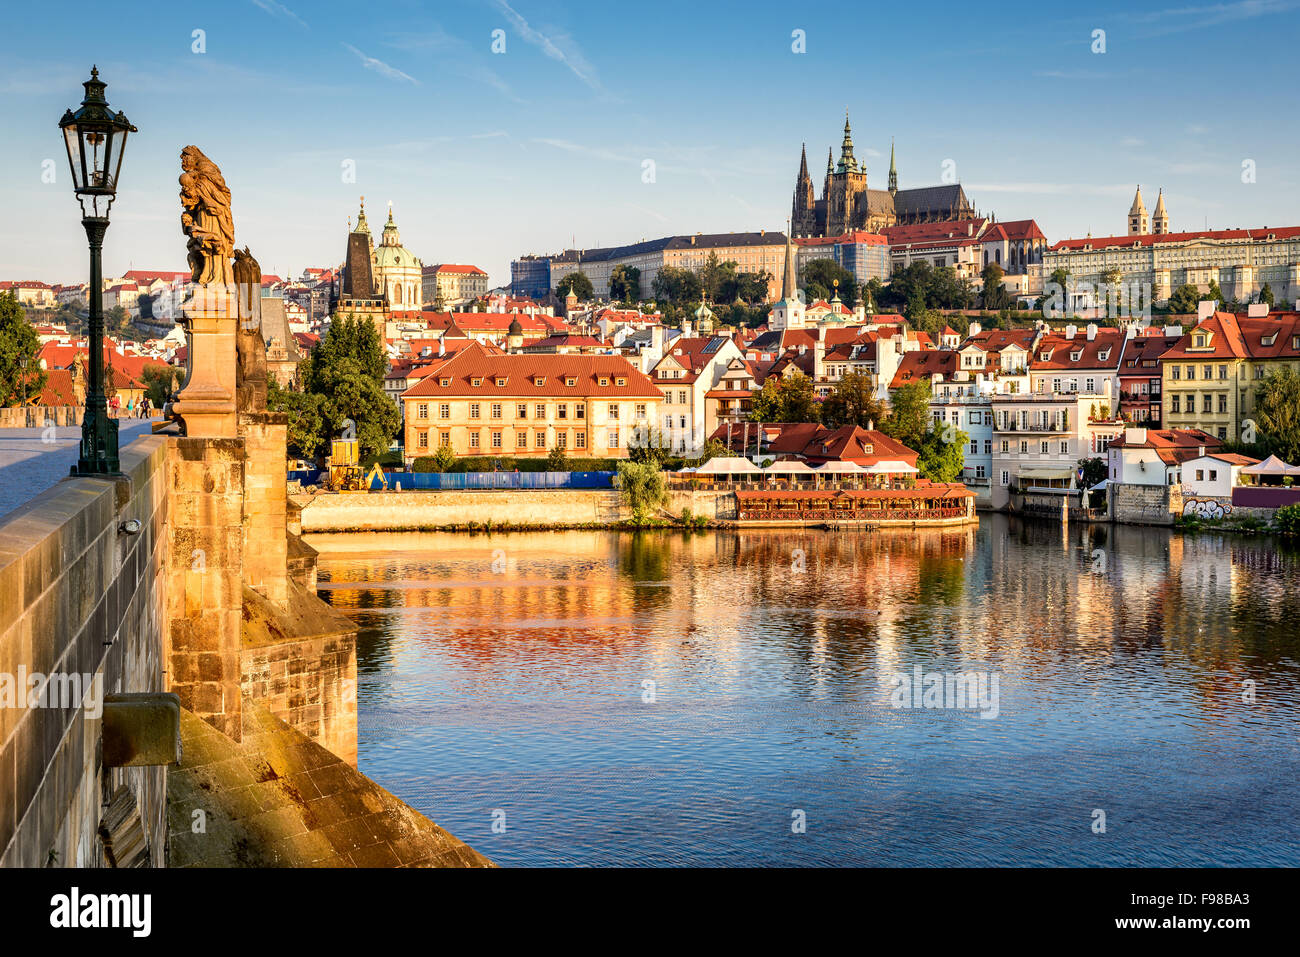 La Bohême, Prague, République tchèque. Hradcany est le château de Prague avec les églises, les chapelles, les salles et tours. Banque D'Images